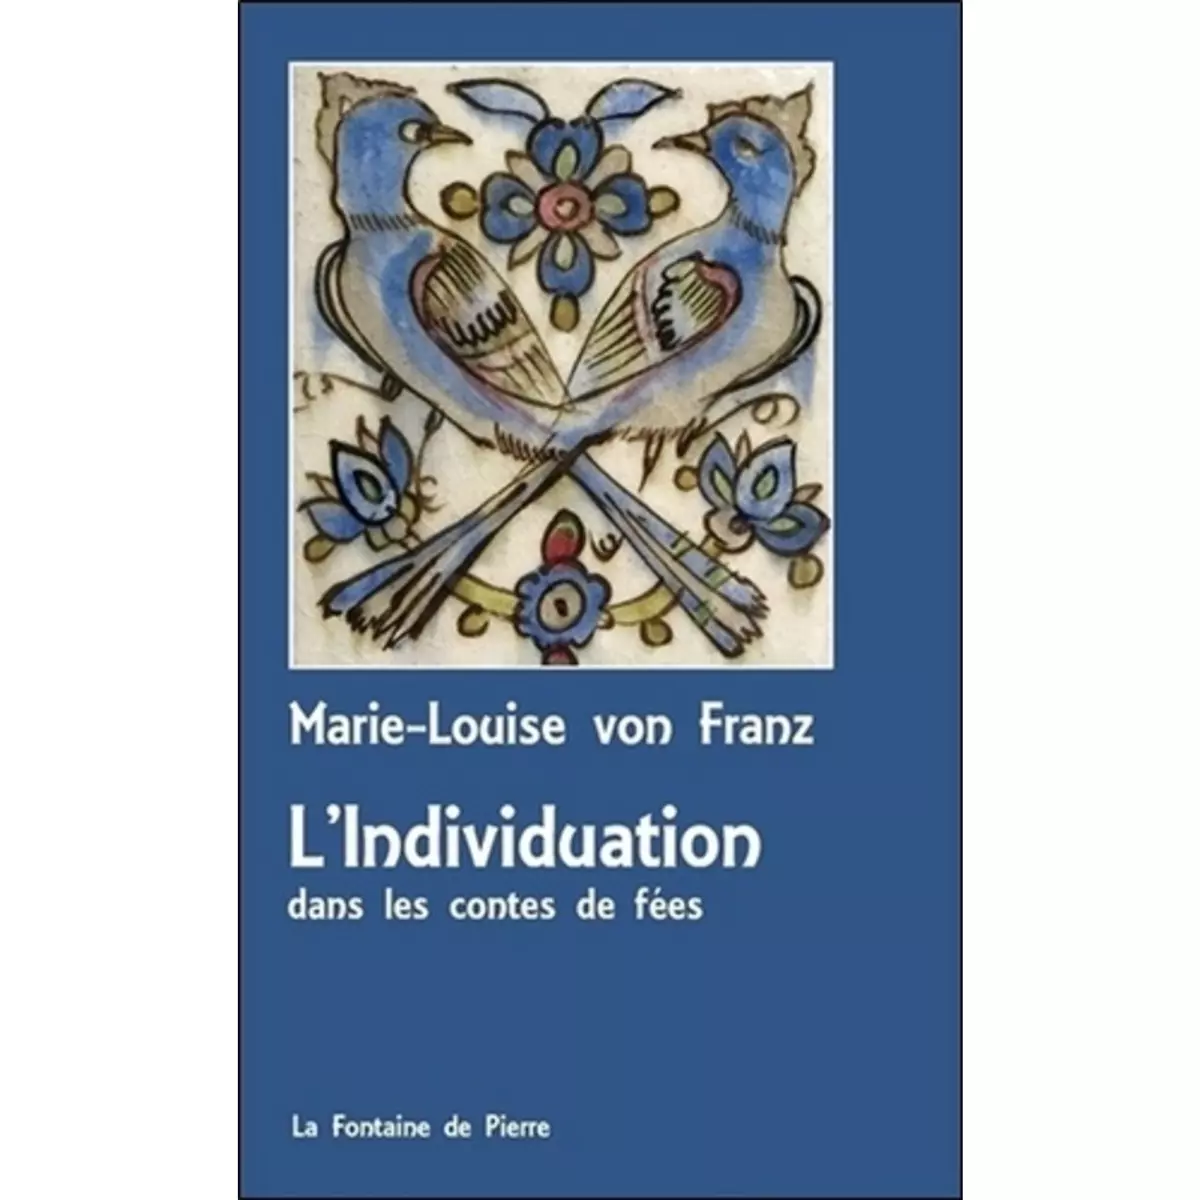  L'INDIVIDUATION DANS LES CONTES DE FEES. 3E EDITION, Franz Marie-Louise von